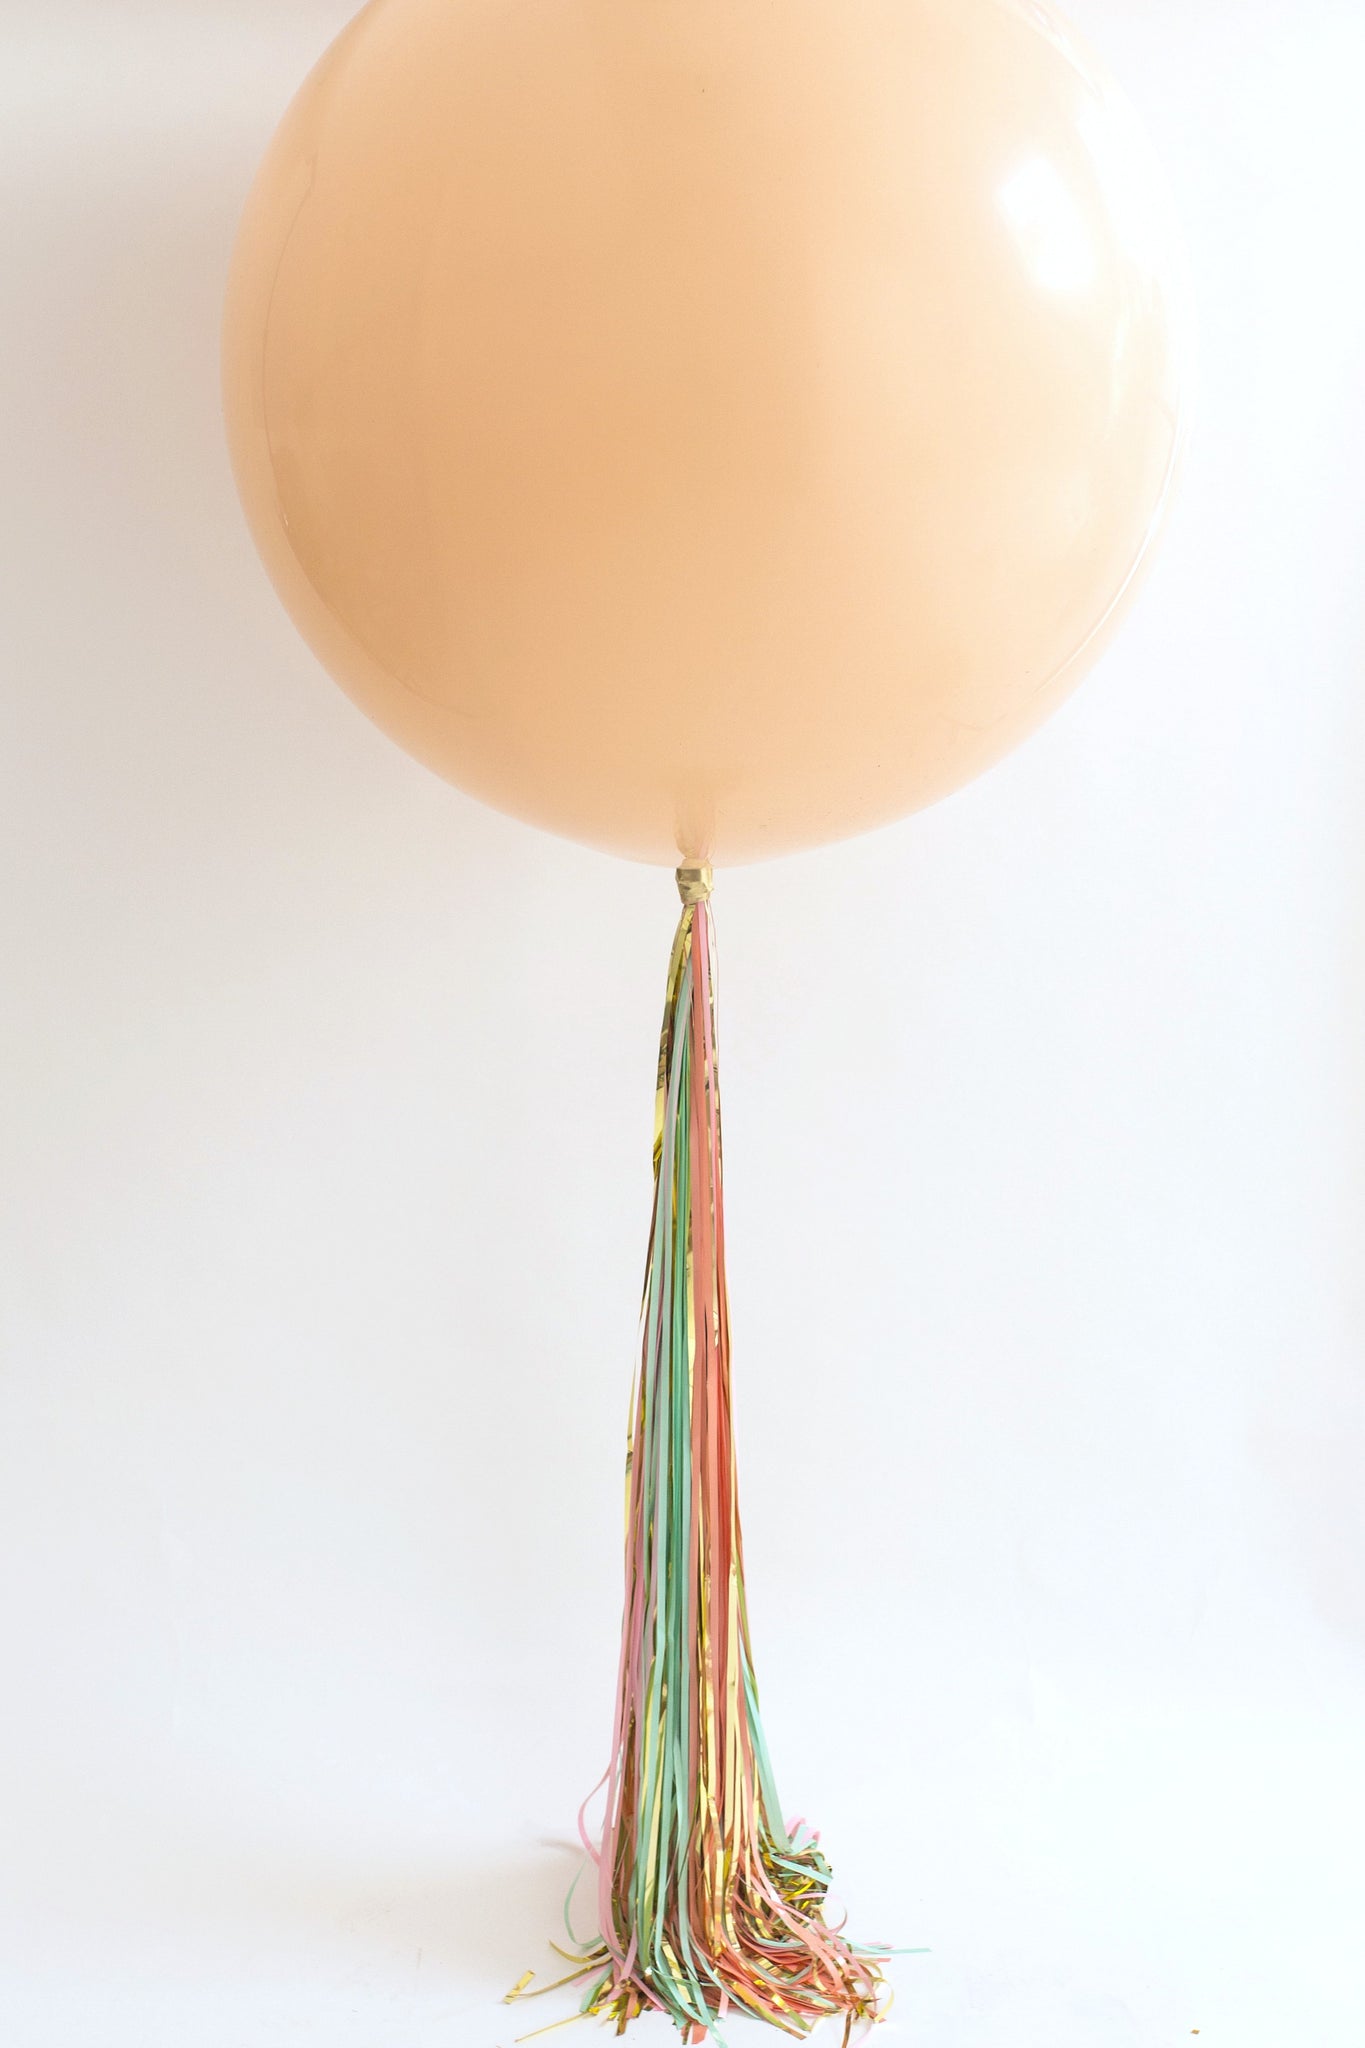 Easiest Quickest Balloon Tassel Tail Ever! Balloon Tassel Hack